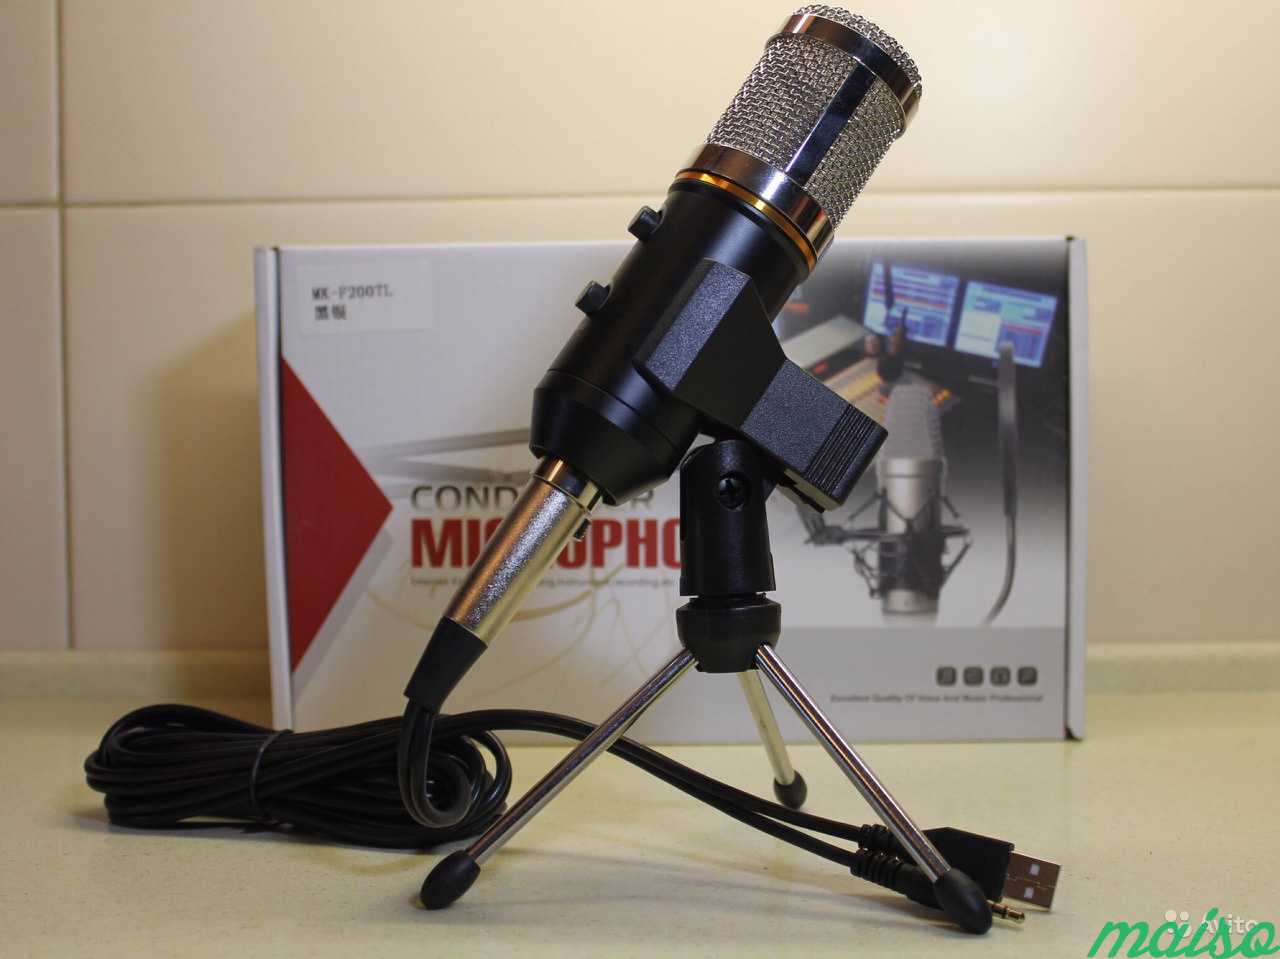 Студийный микрофон мк-F200FL в Санкт-Петербурге. Фото 1